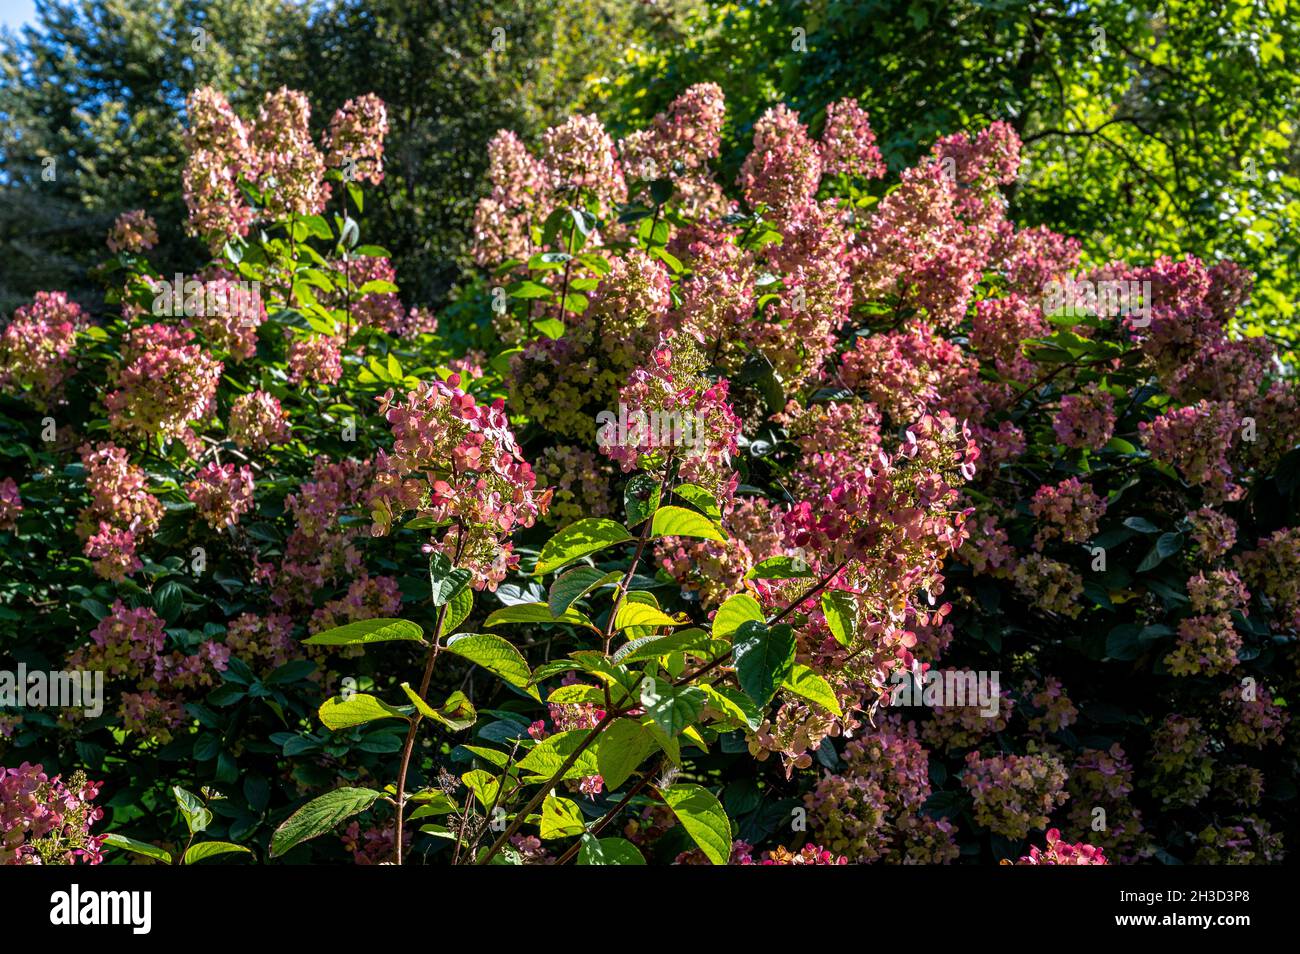 Hydrangea paniculata Diamante rosa, Hydrangeaceae, flores rosadas de finales de verano. Foto de stock